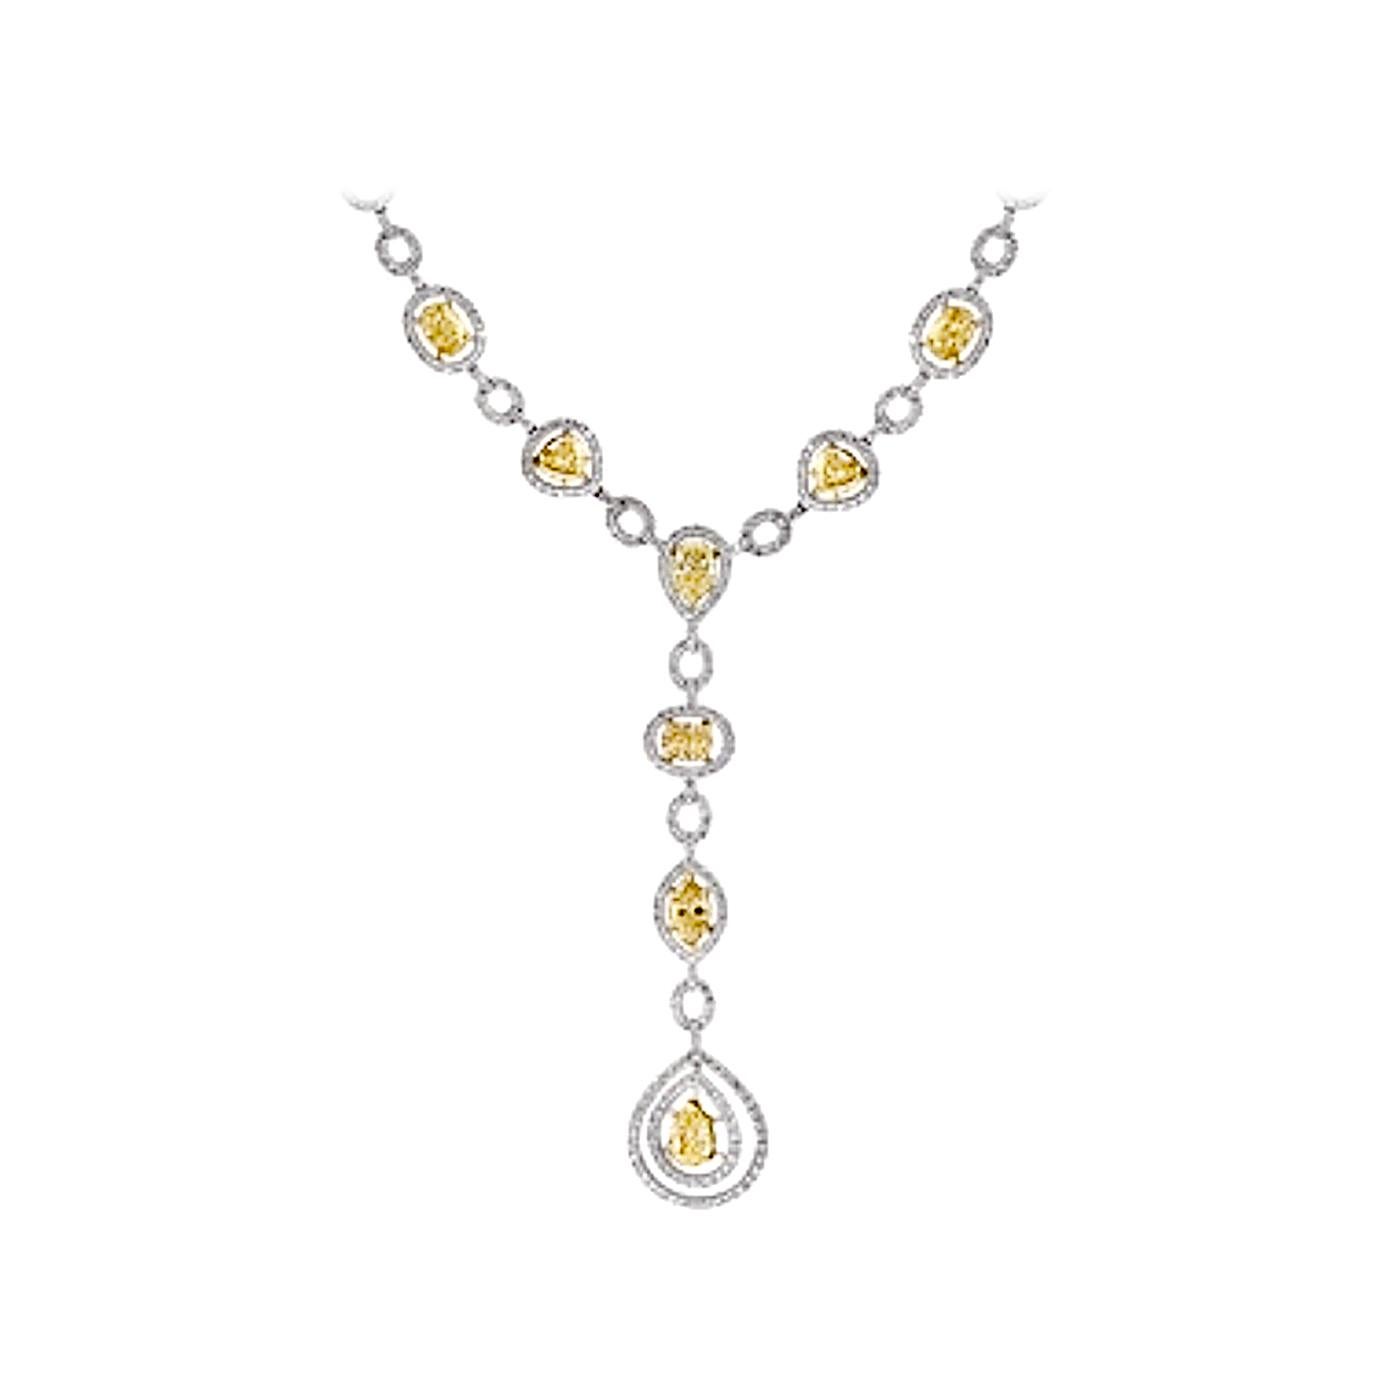 8 Yellow Solitaire Diamond and White Diamond Necklace 18 Karat White Gold